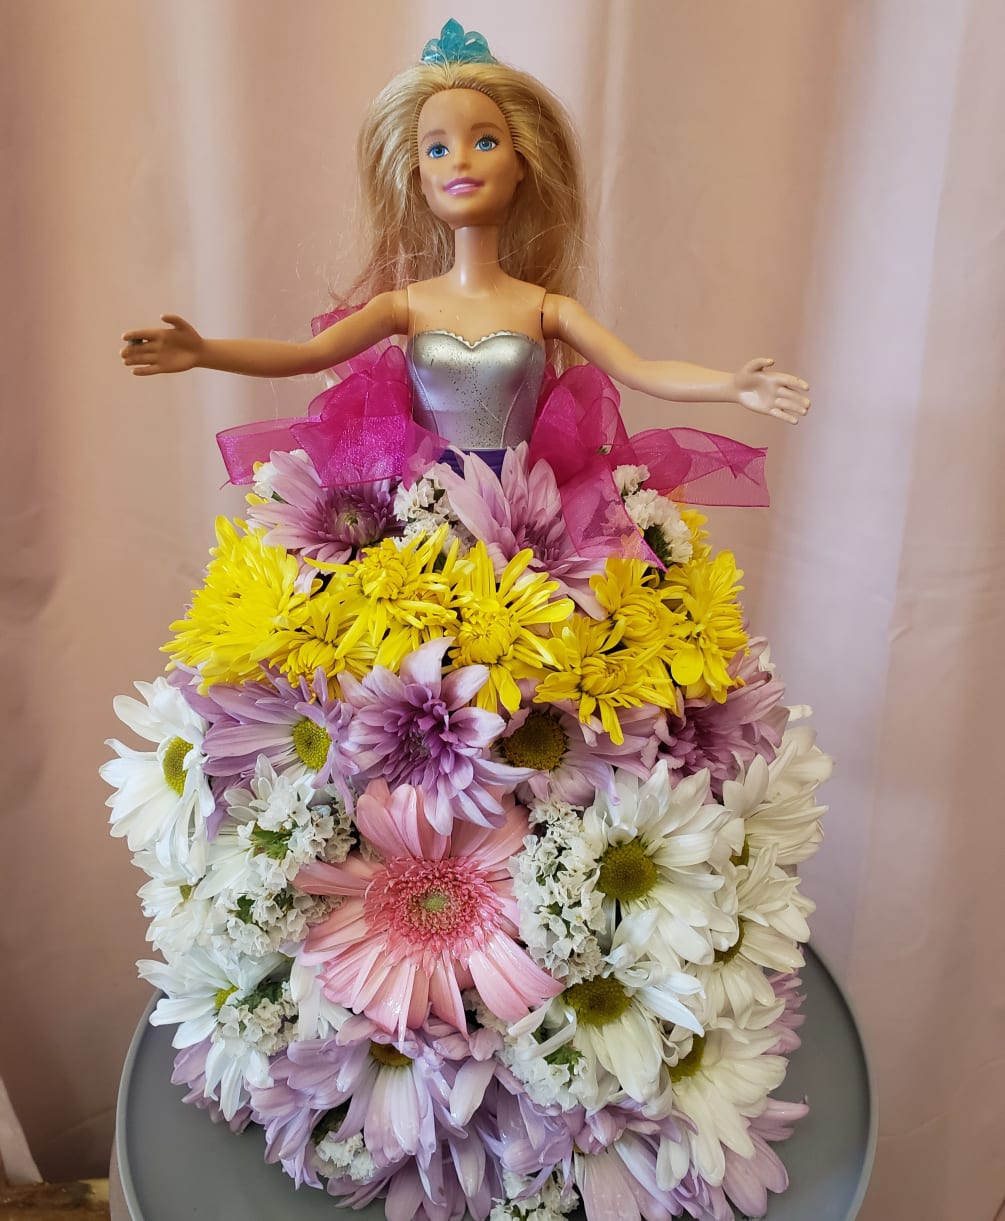 Come on Barbie, lets go party! This adorable Barbie floral arrangement is